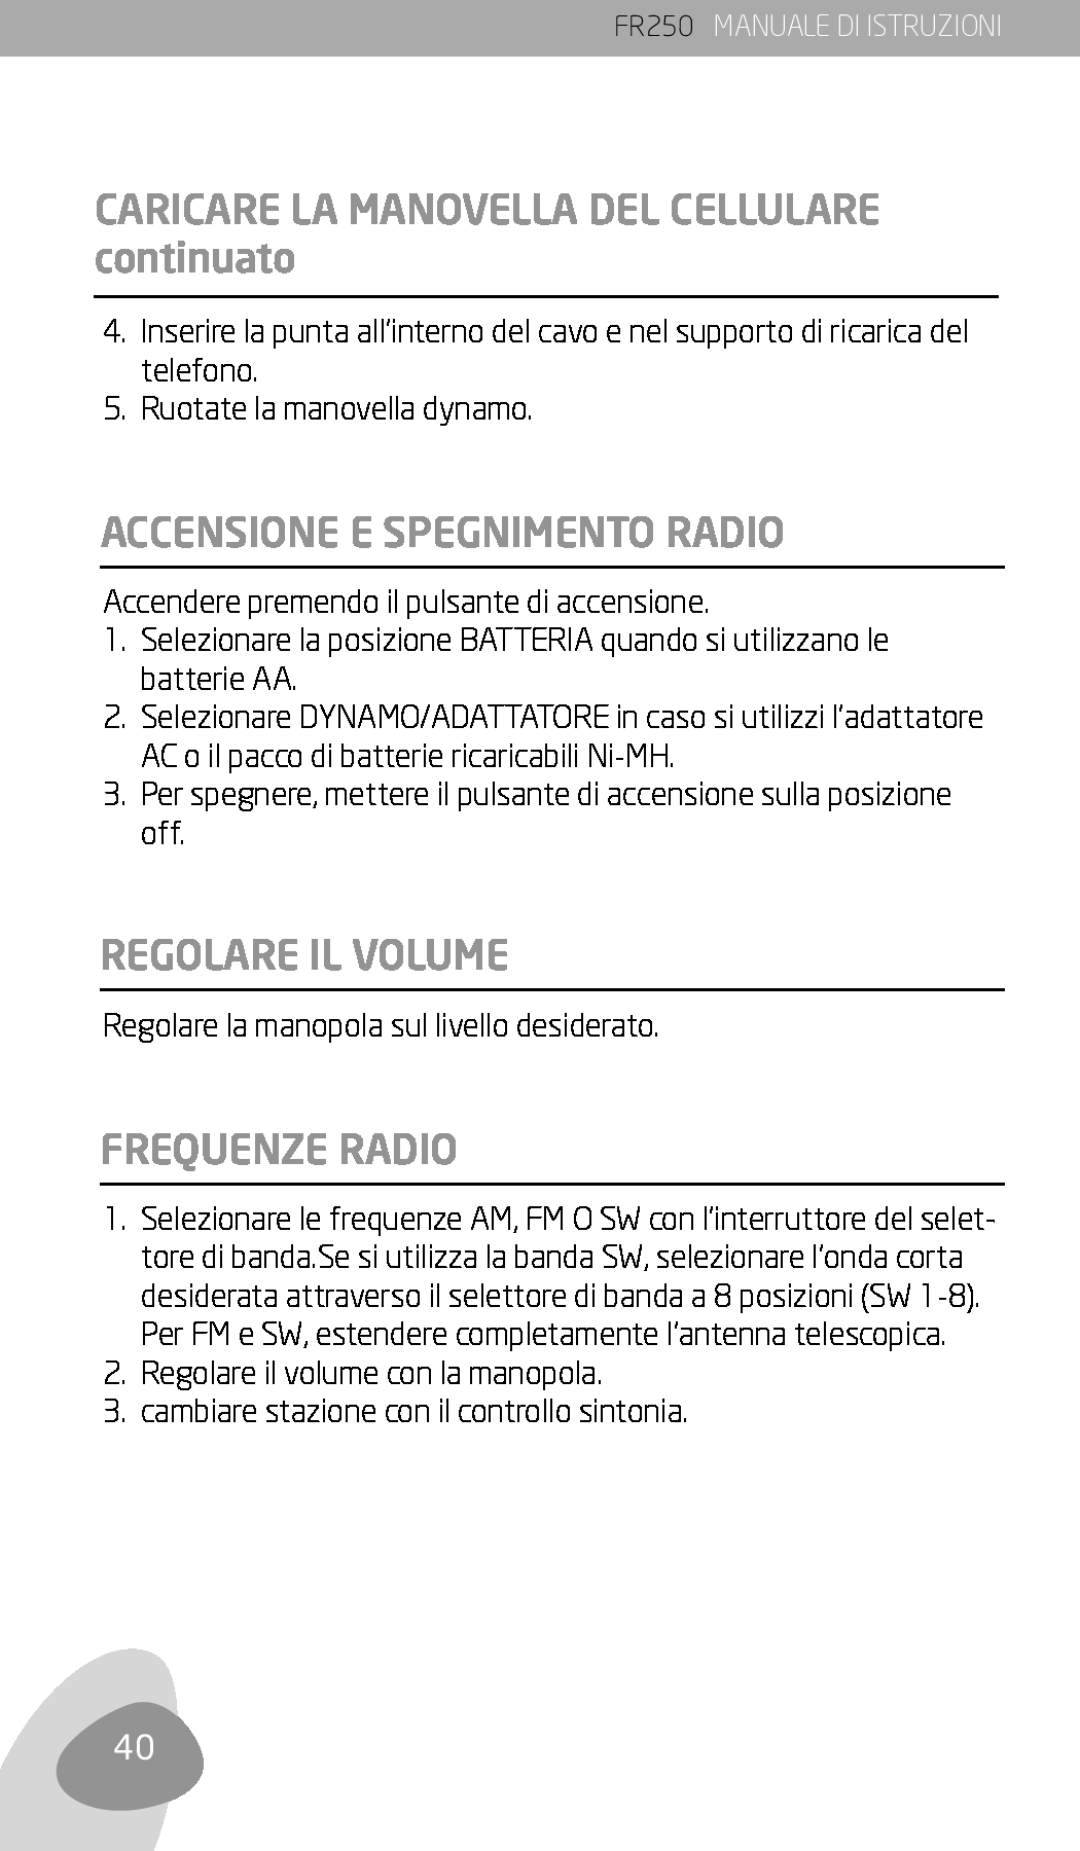 Eton FR250 owner manual CARICARE LA MANOVELLA DEL CELLULARE continuato, Accensione E Spegnimento Radio, Regolare Il Volume 